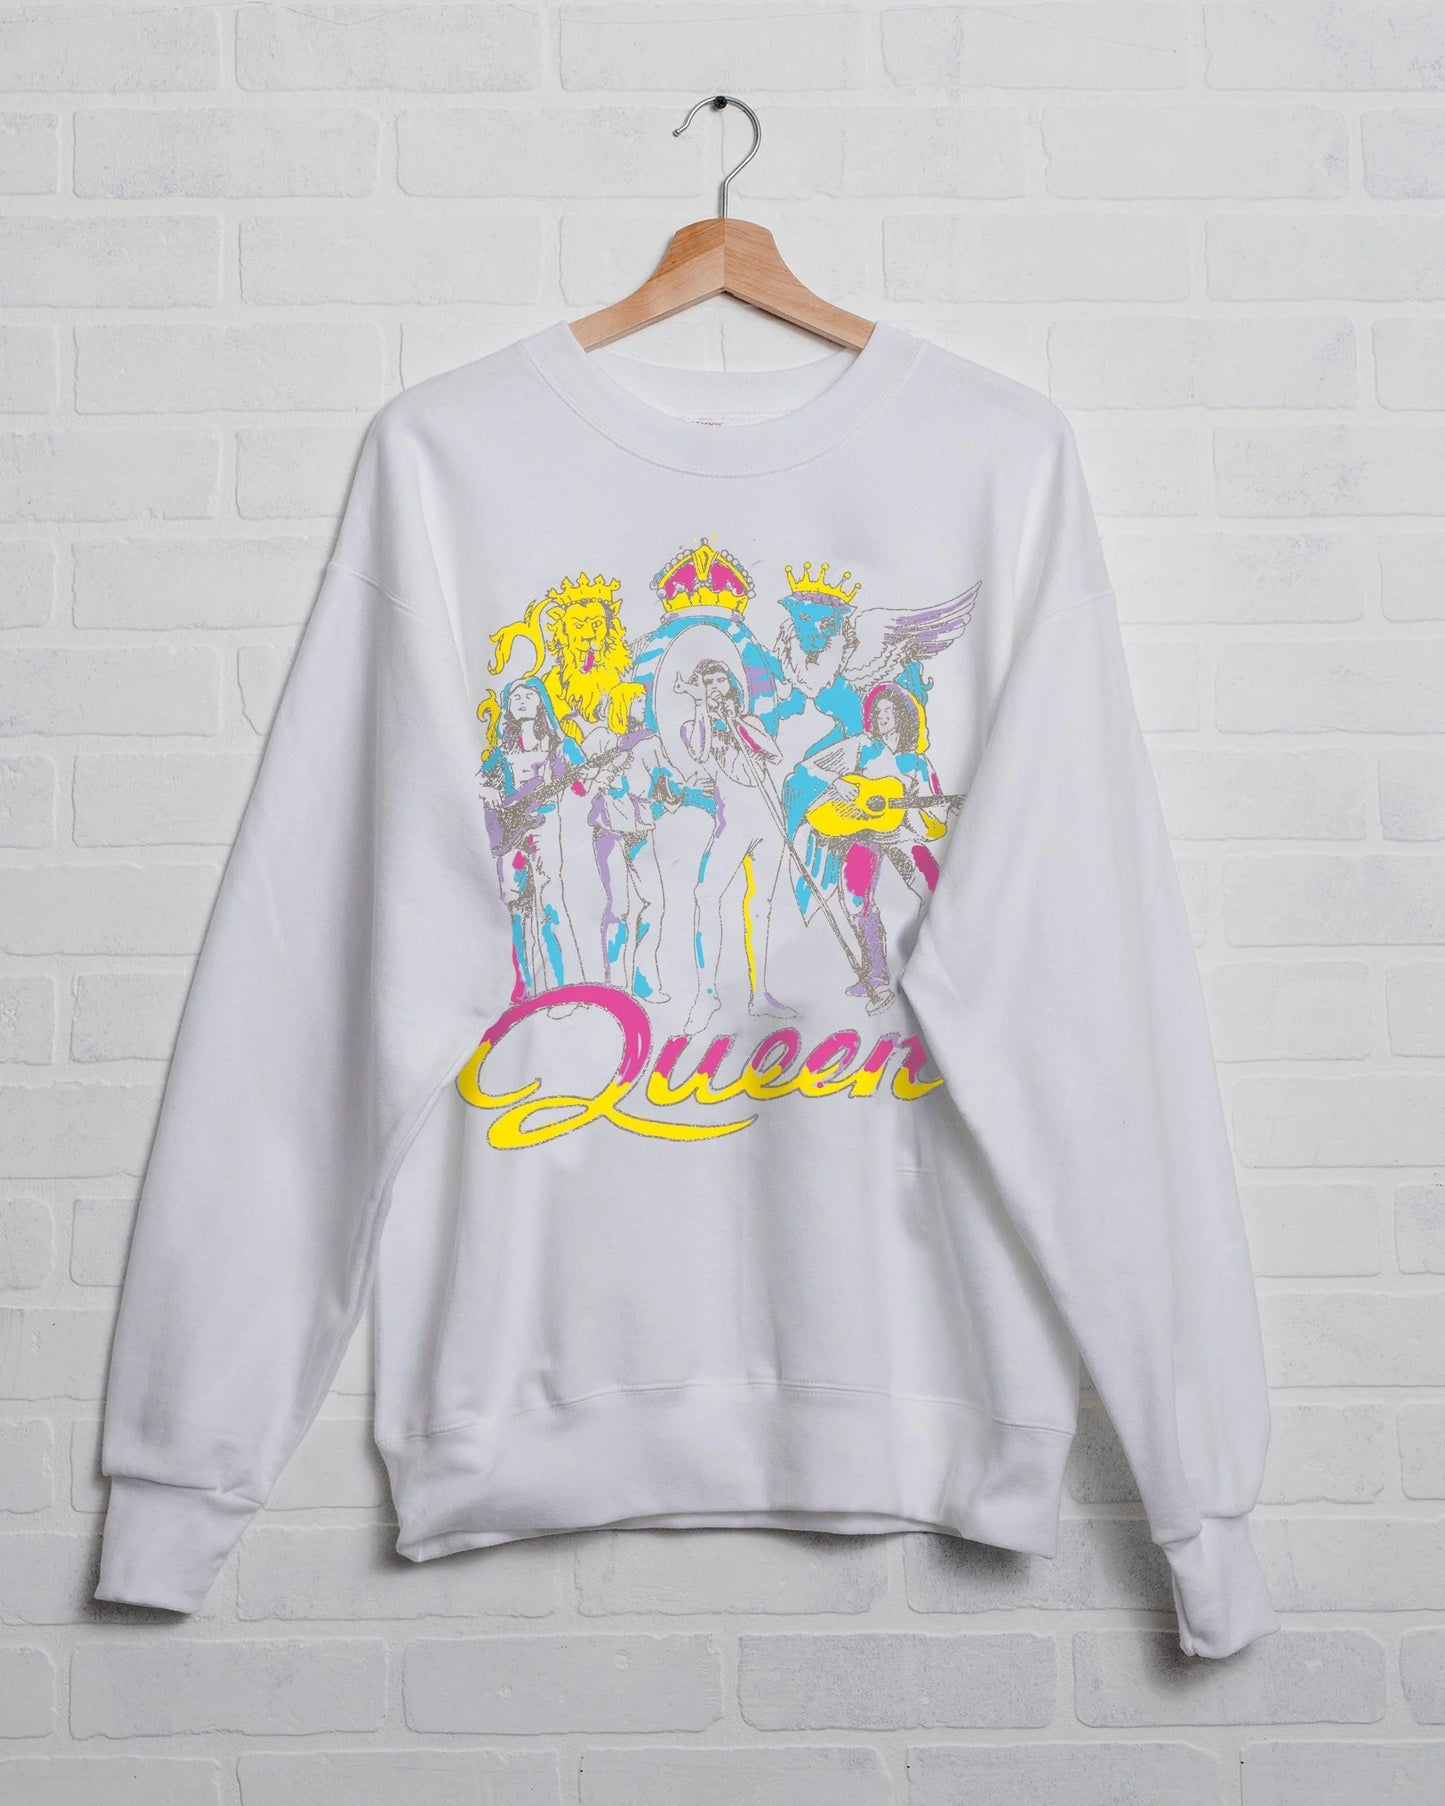 Queen Puff Sweatshirt